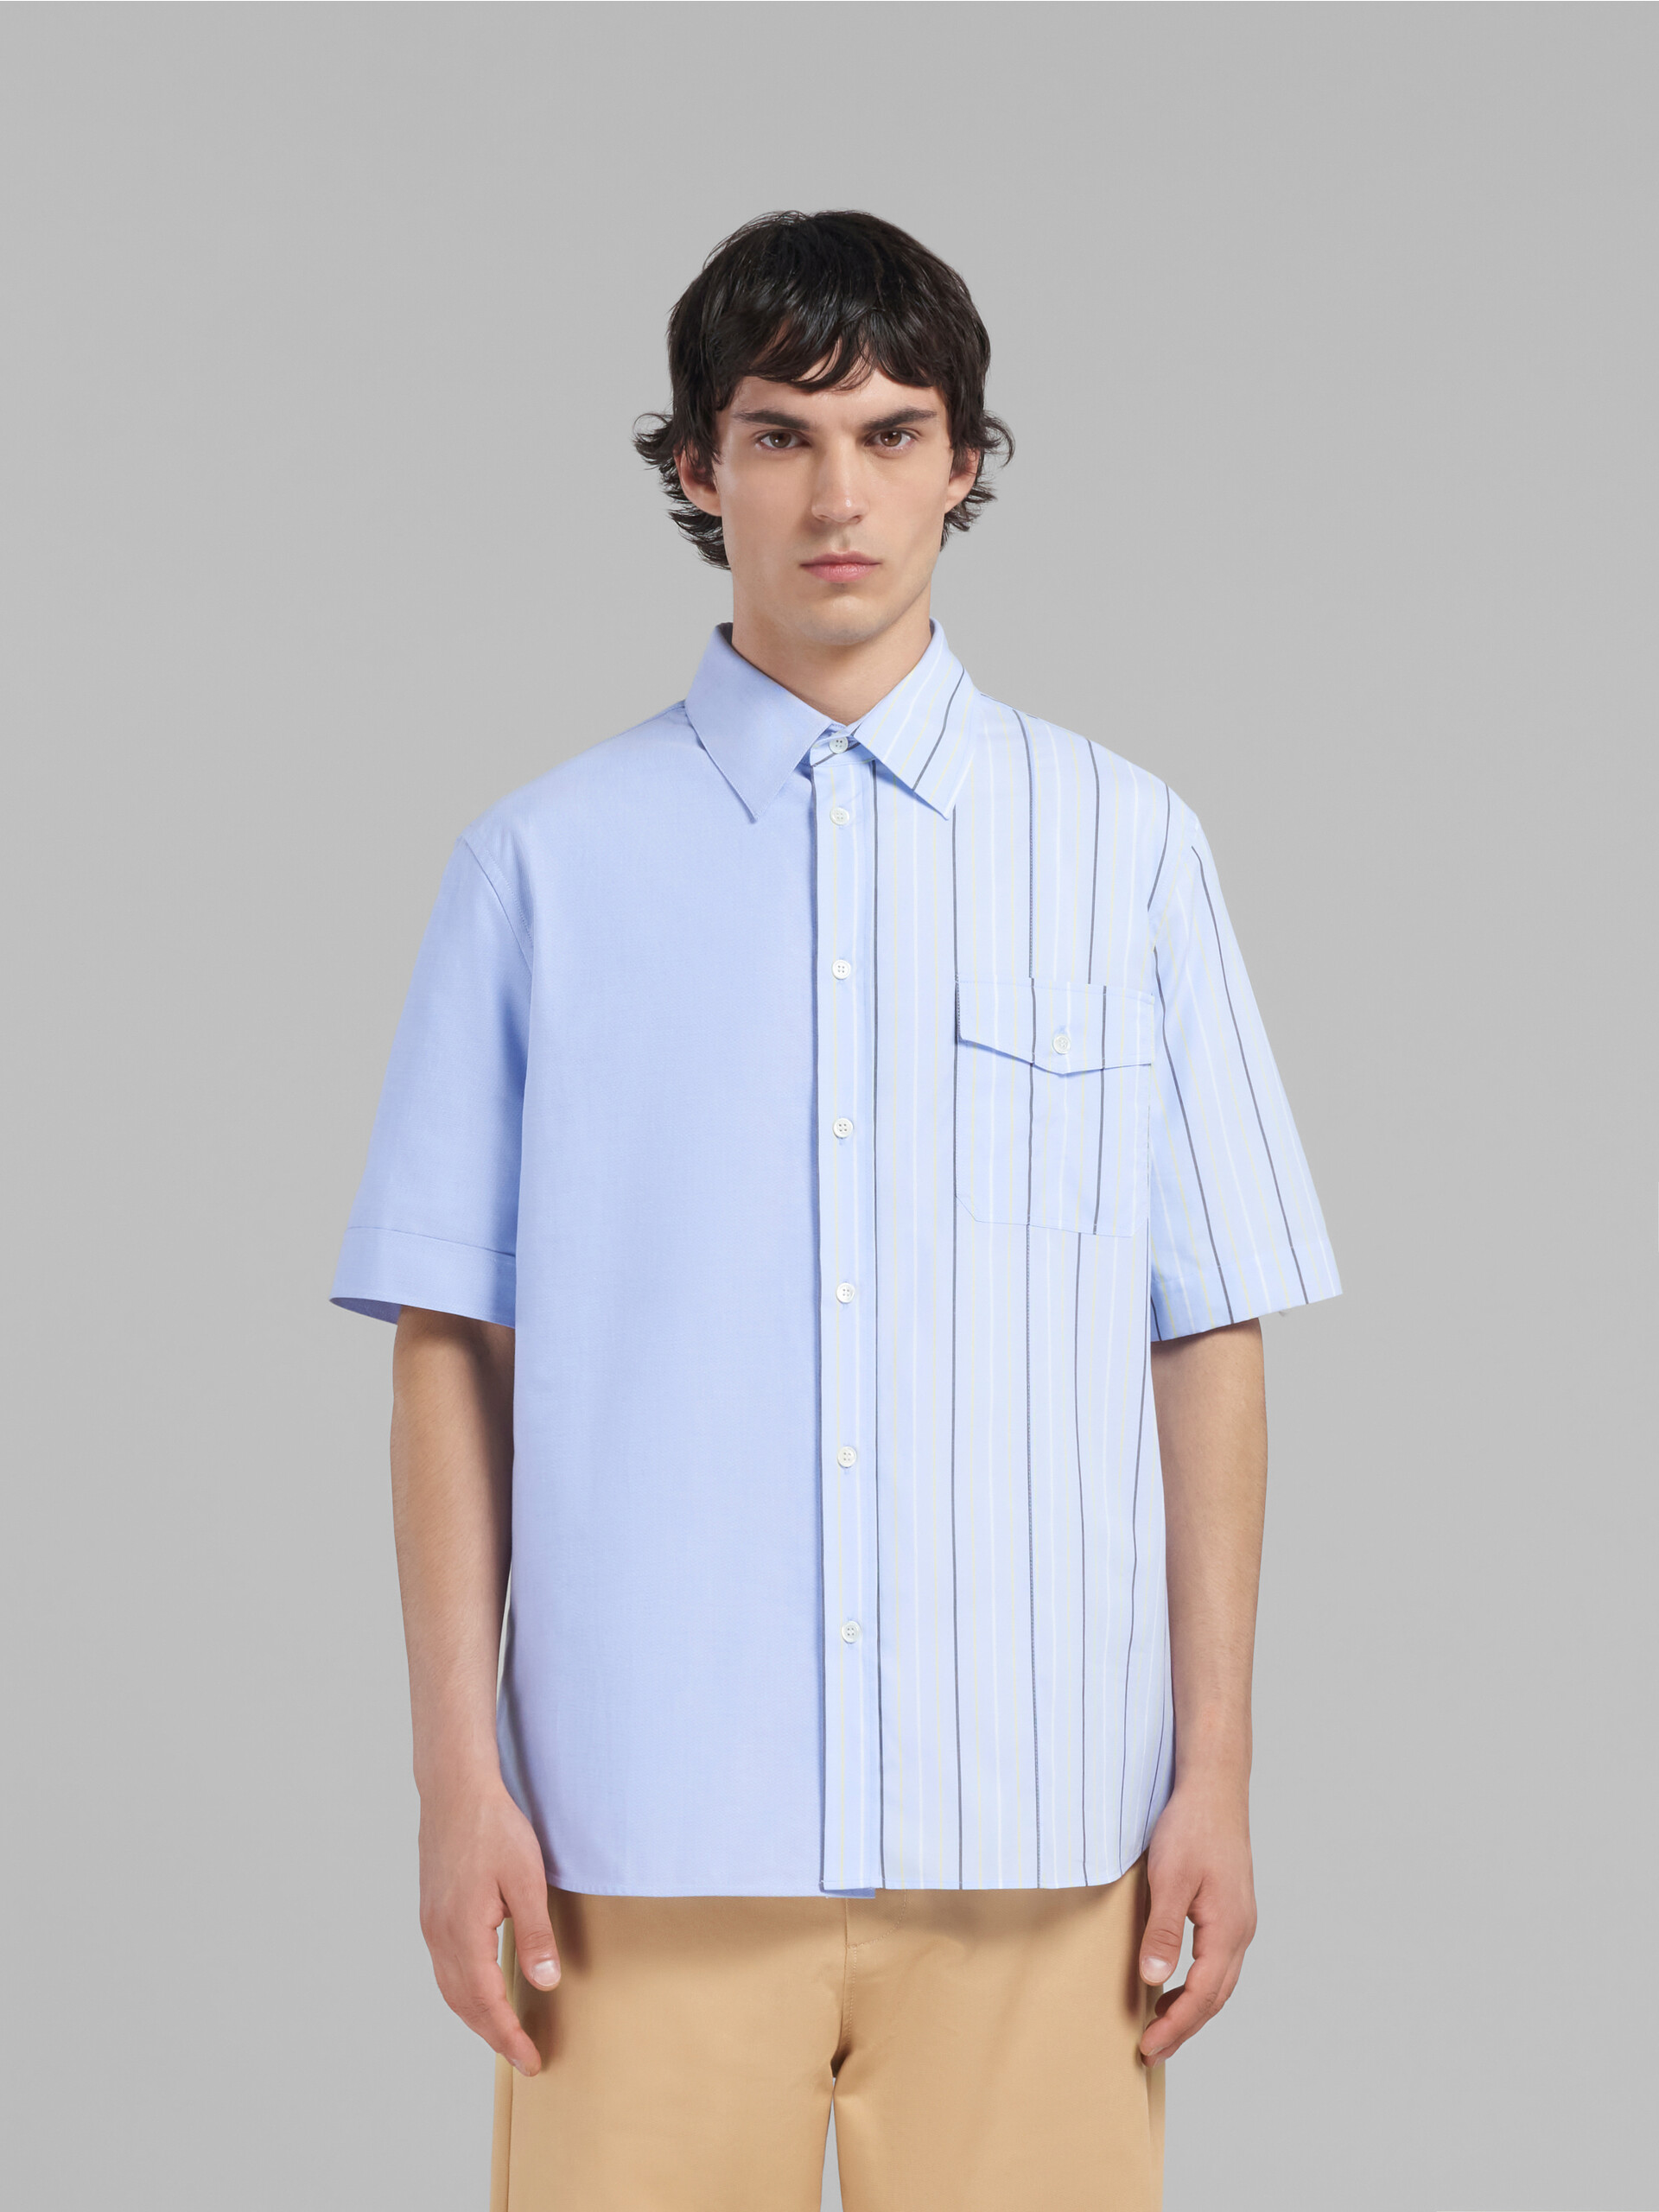 Hellblaues Hemd aus Bio-Popeline mit unterschiedlichen Hälften - Hemden - Image 2